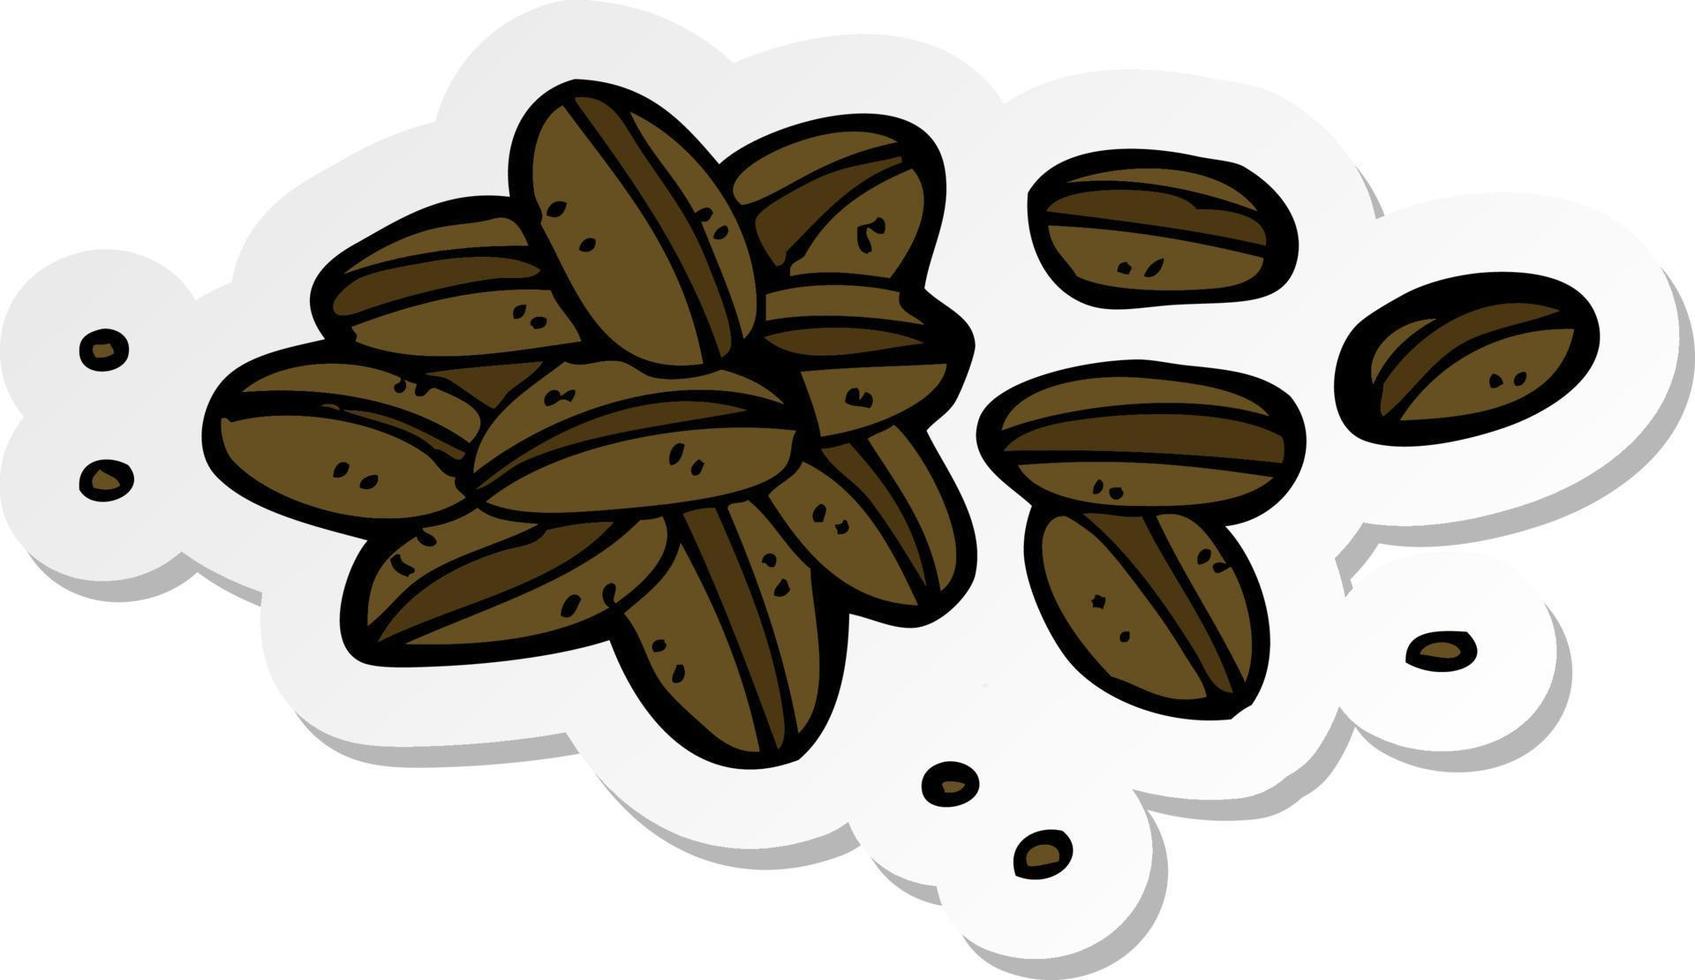 sticker of a cartoon coffee beans vector